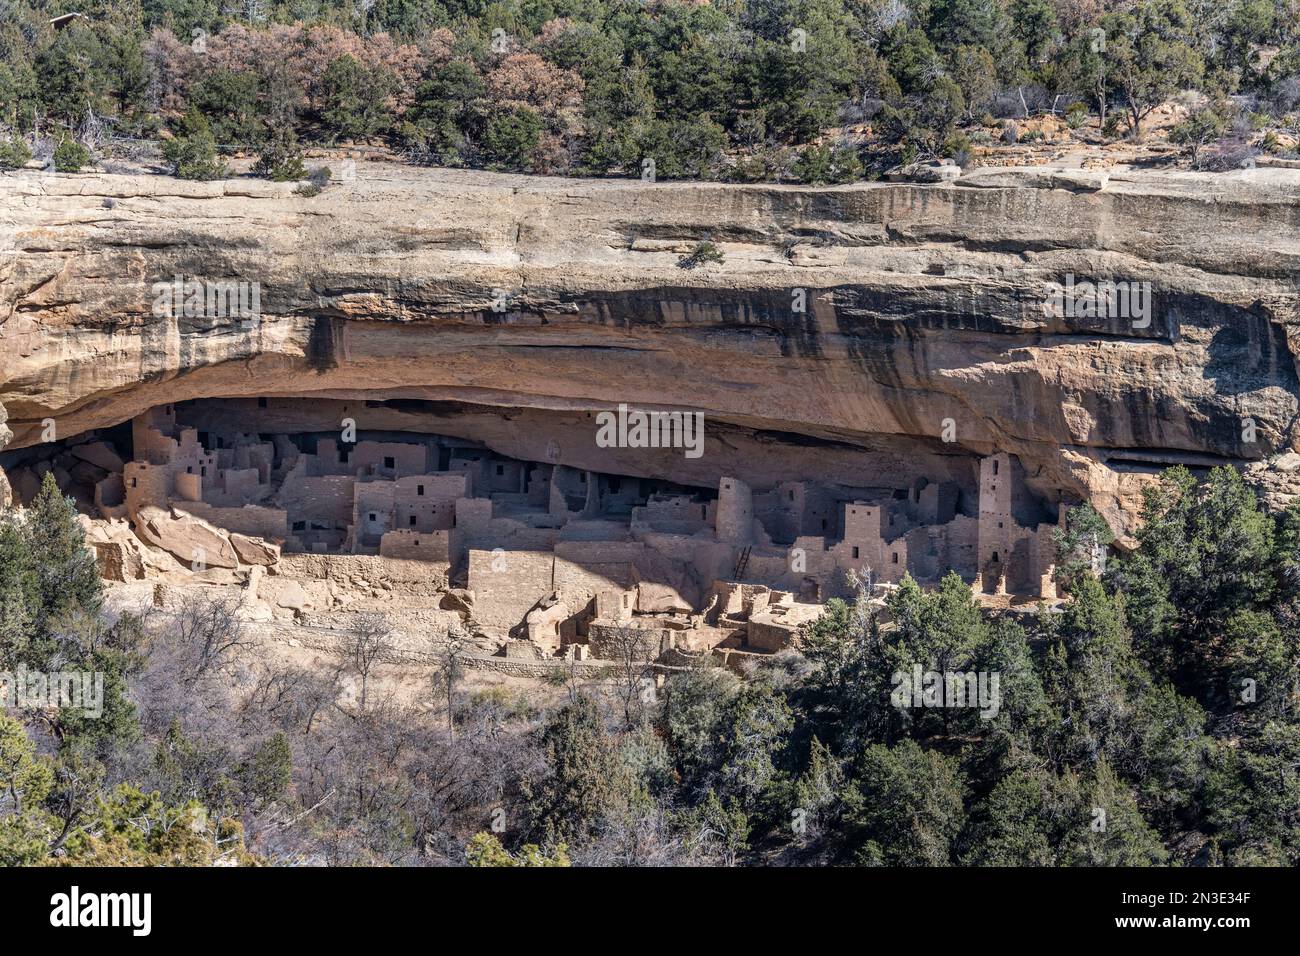 Un regard sur le Cliff Palace, Cliff Dwellings dans le parc national de Mesa Verde ; Mancos, Colorado, États-Unis d'Amérique Banque D'Images